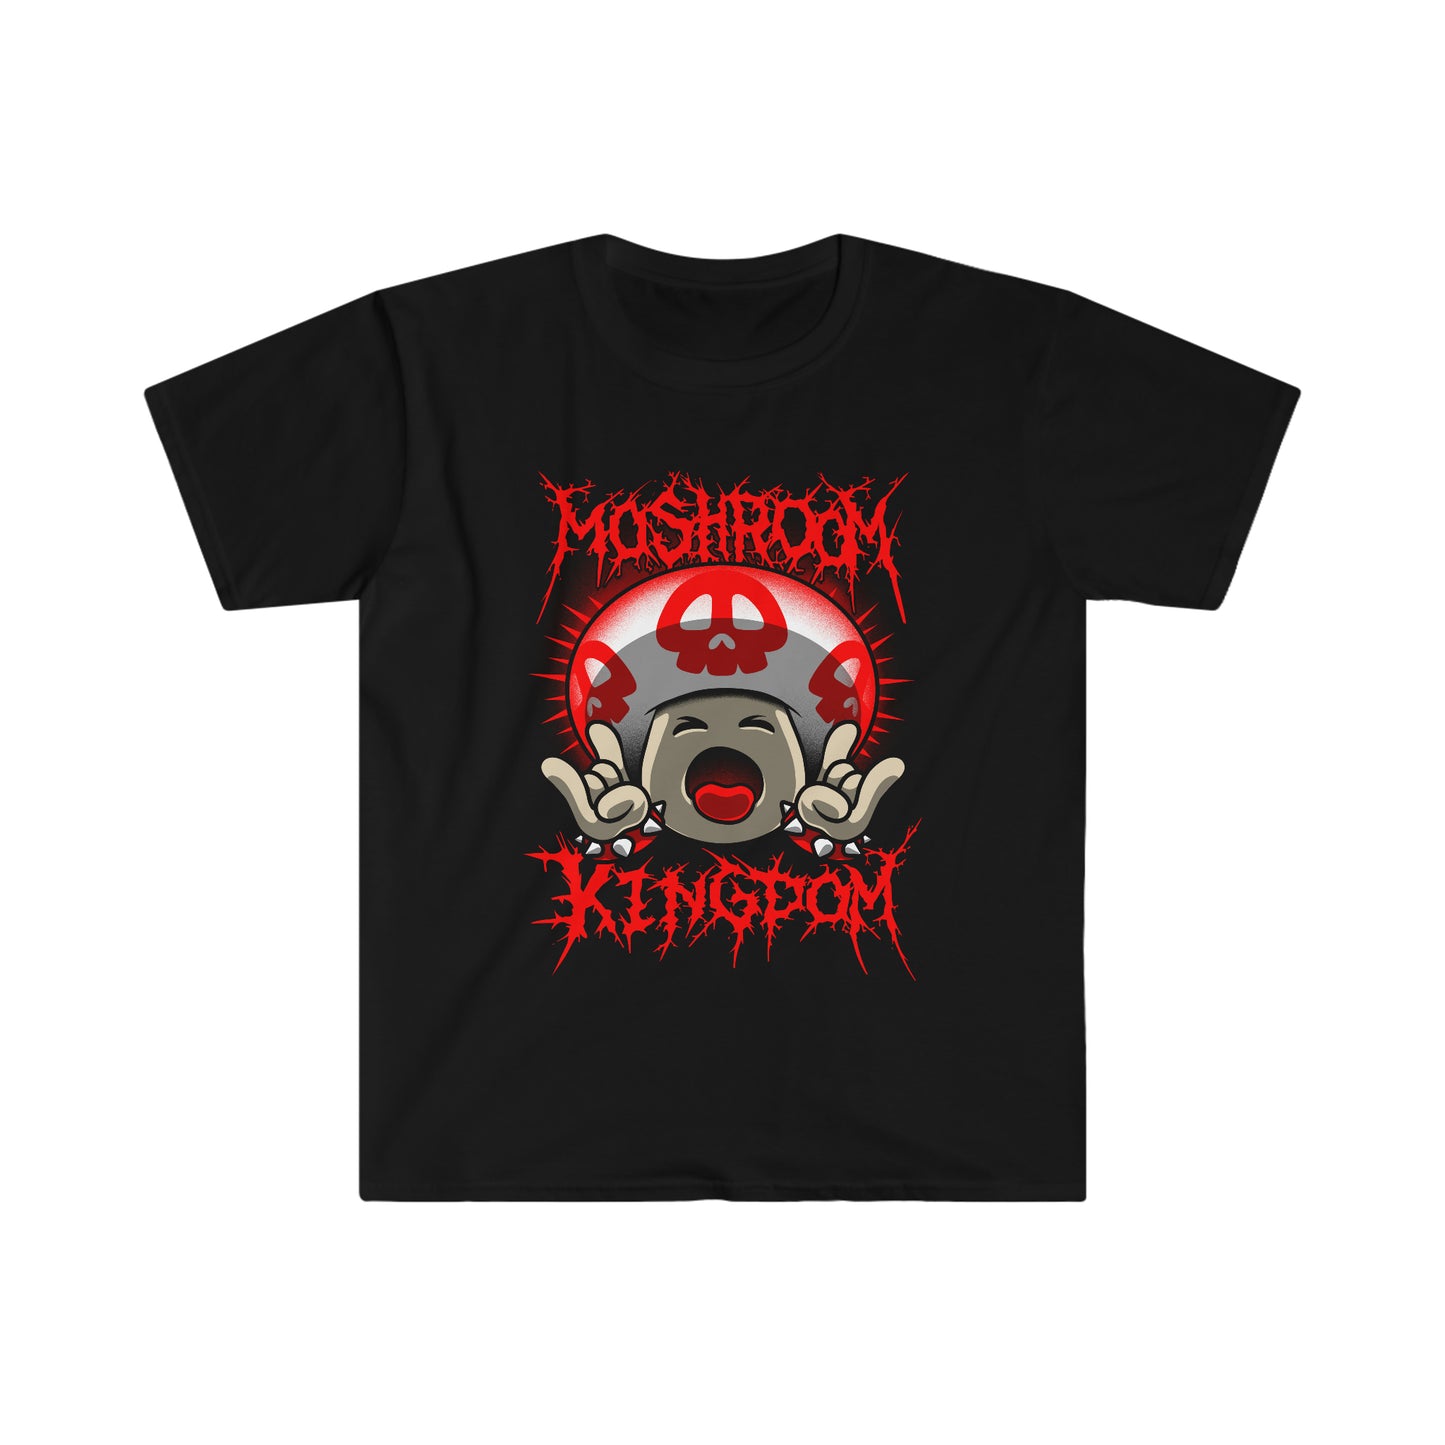 Moshroom Kingdom t-shirt